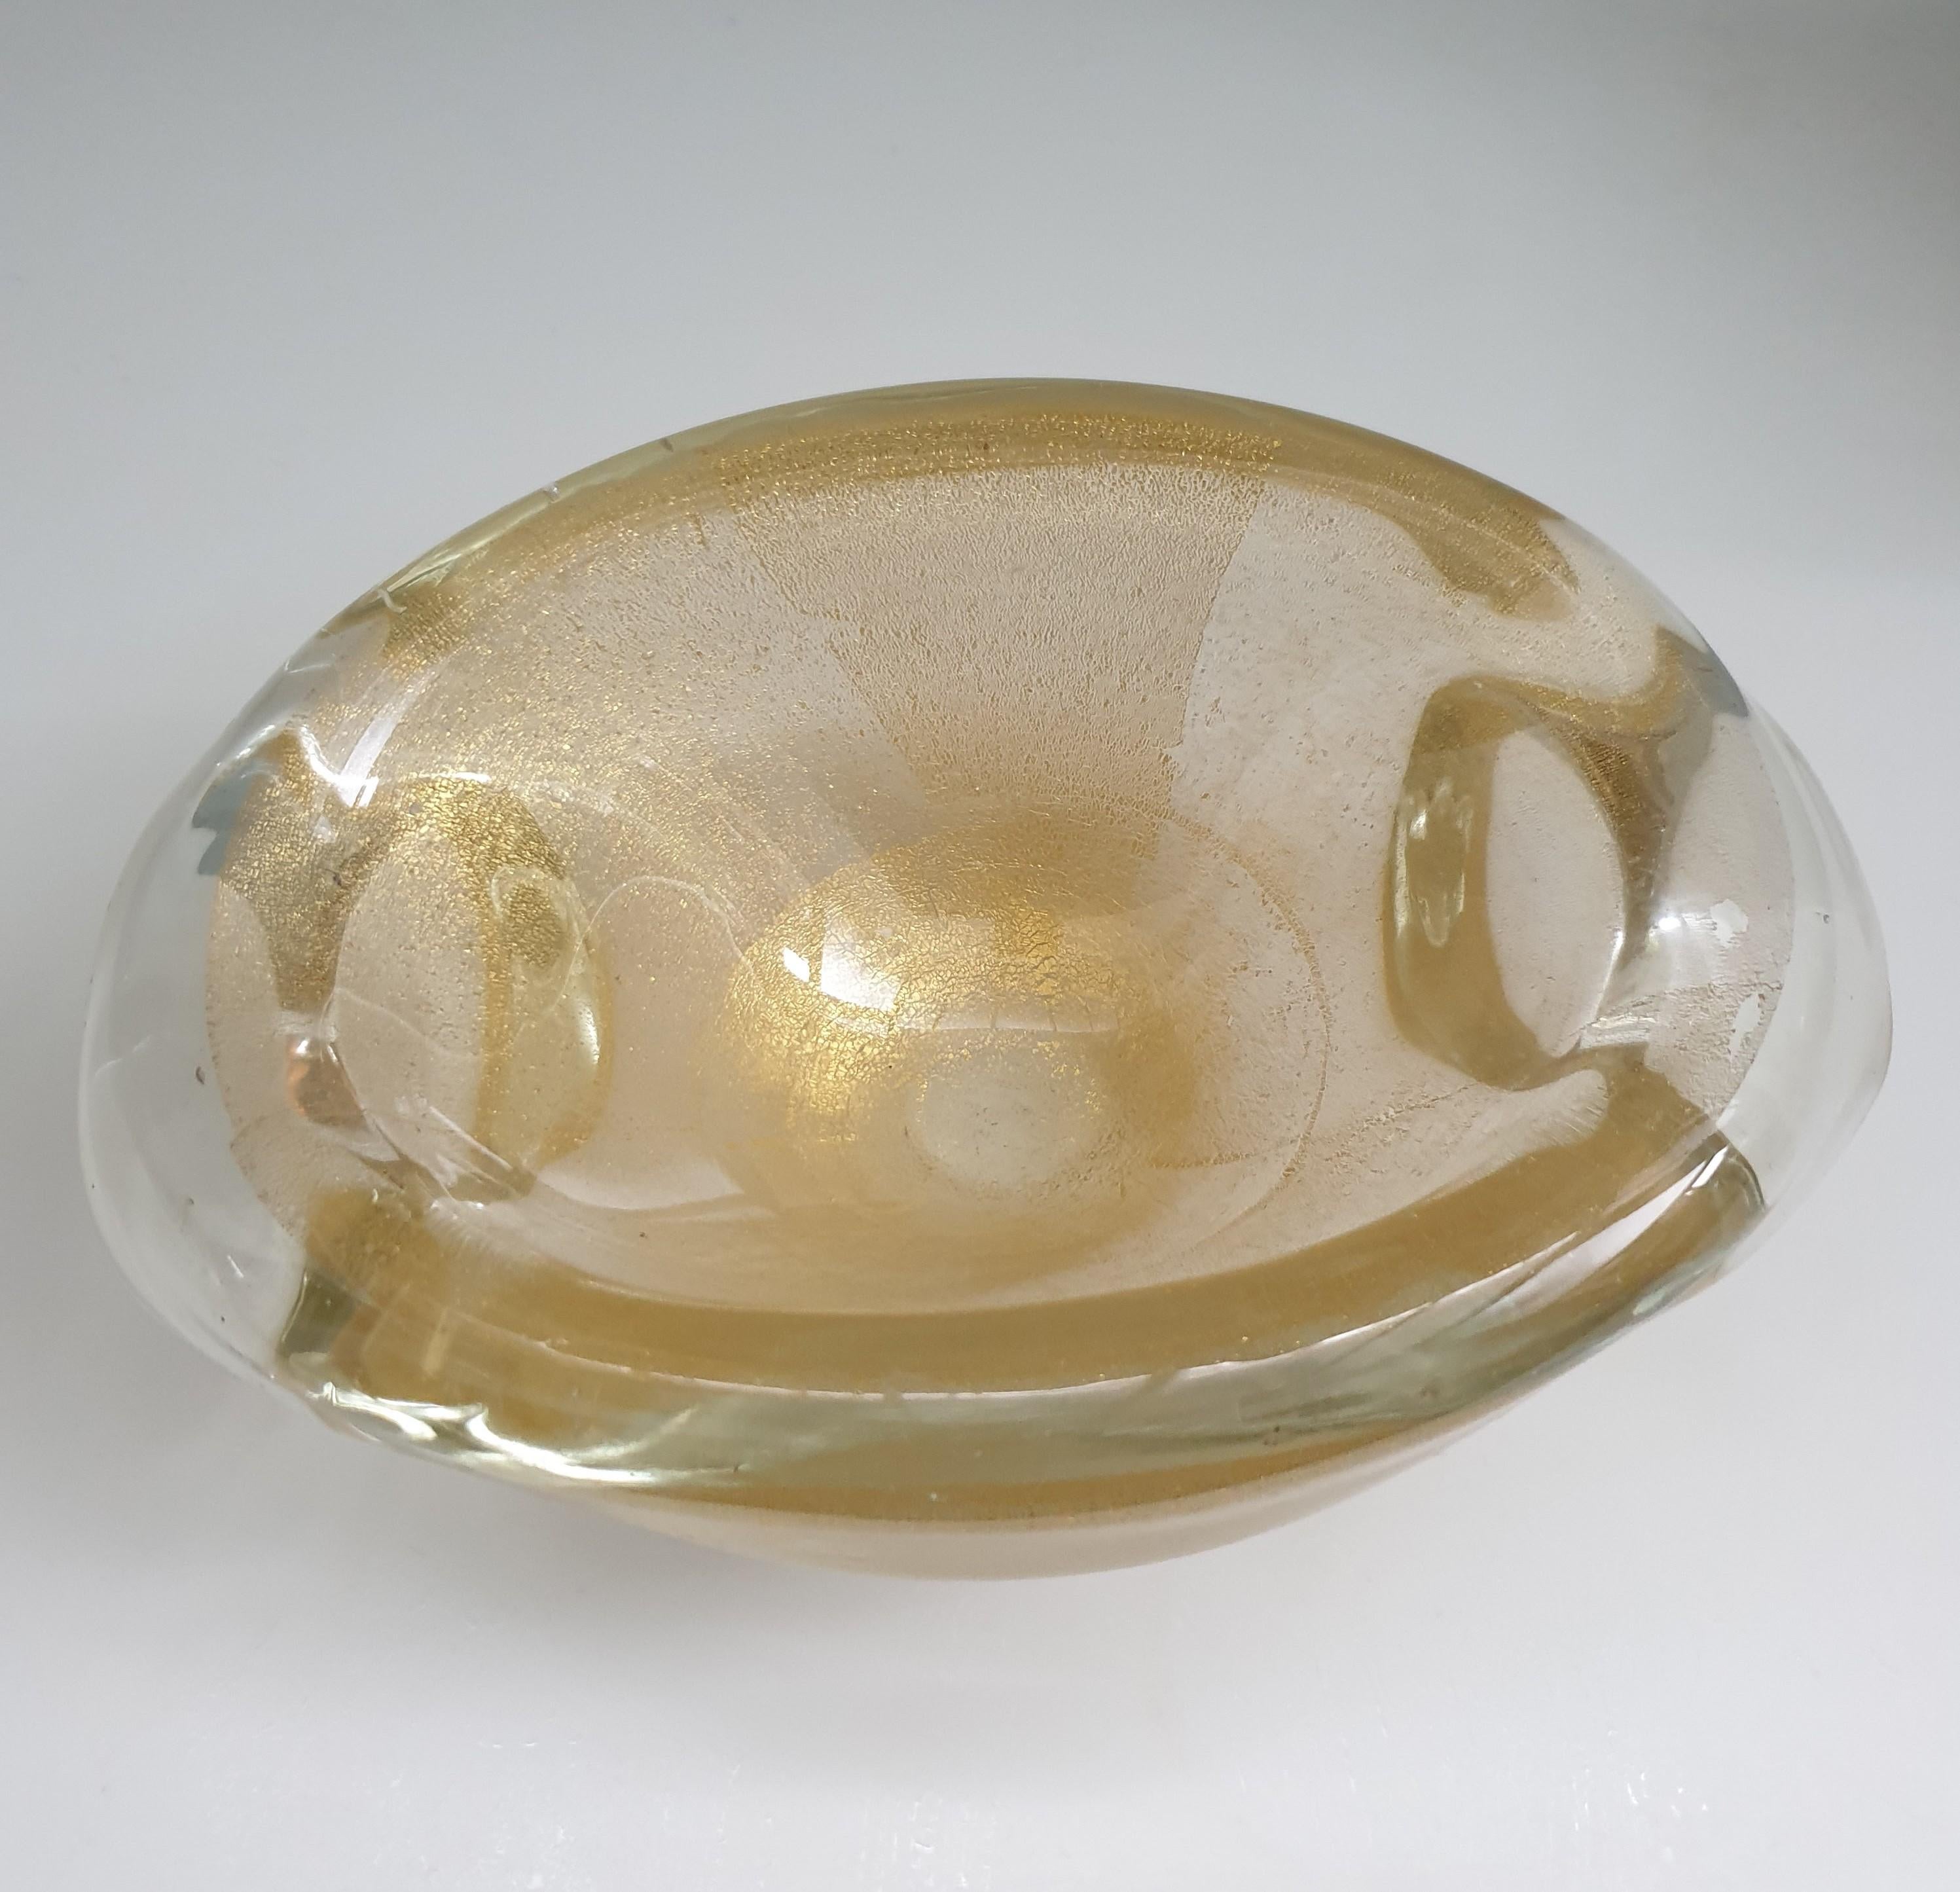 Schöne Vintage gut dimensioniert Murano mundgeblasenem Glas Schüssel. Die Schale wird in der berühmten Sommerso-Technik hergestellt, bei der klare Blasen in Champagner- oder Karamellfarbe mit Goldflecken entstehen. Es handelt sich